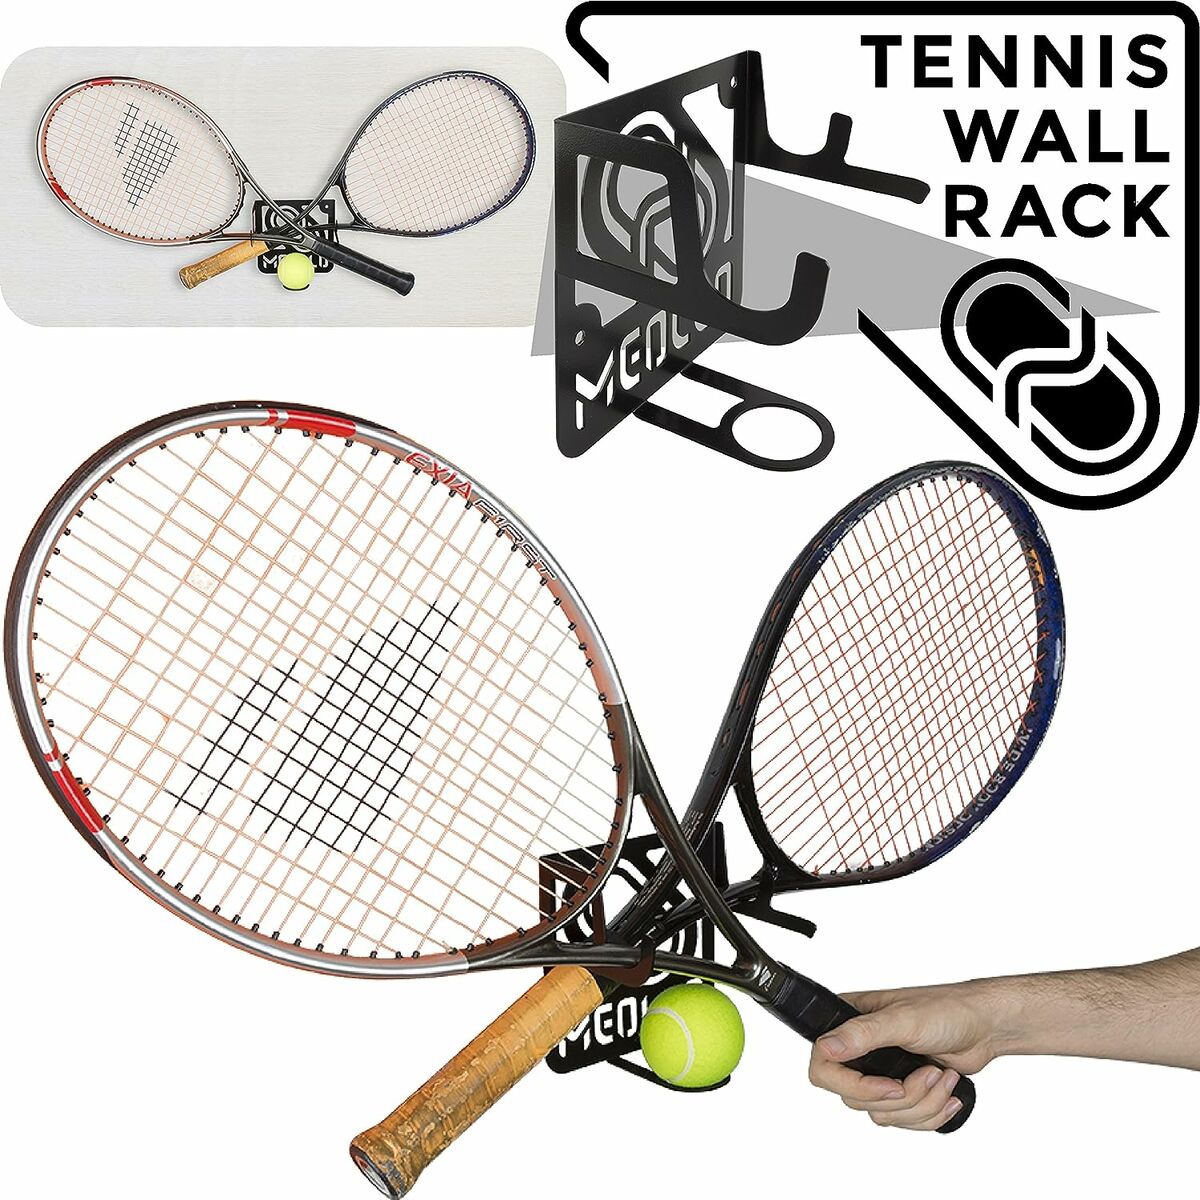 Soporte De Pared Para Raquetas De Tenis Meollo (2 Unidades)